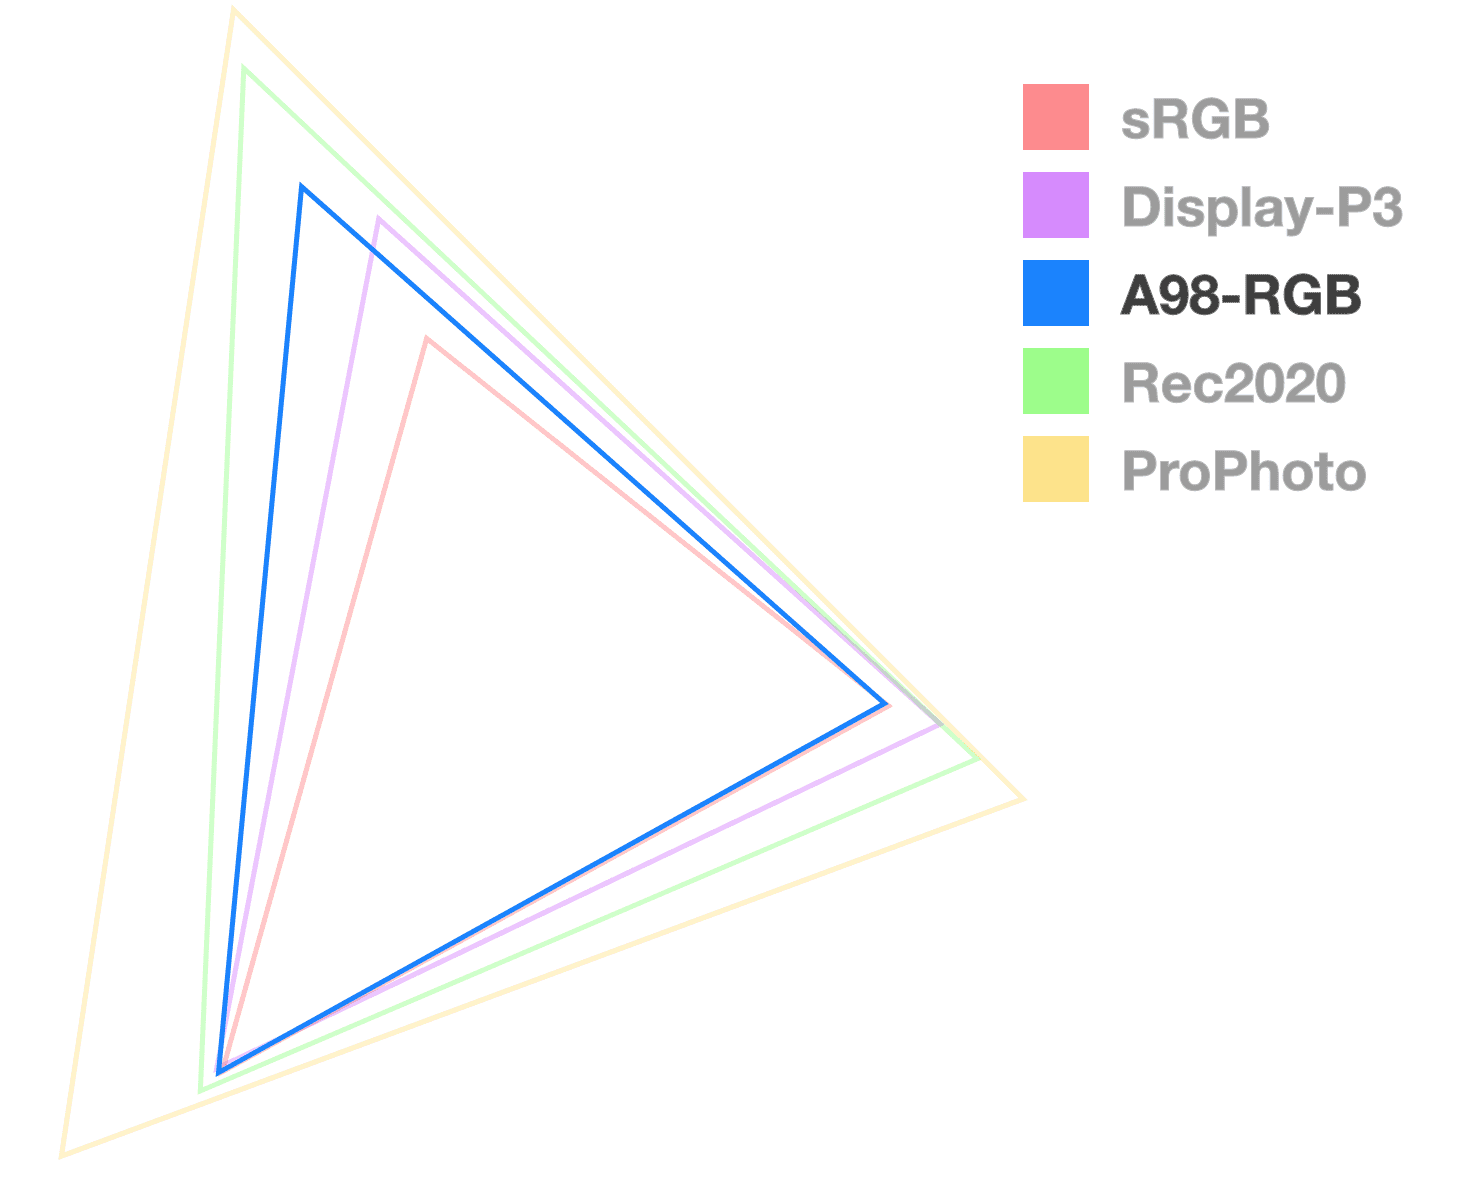 A98 삼각형은 완전히 불투명한 유일한 삼각형으로, 색 영역의 크기를 시각화하는 데 도움이 됩니다. 중간 크기의 삼각형 모양입니다.